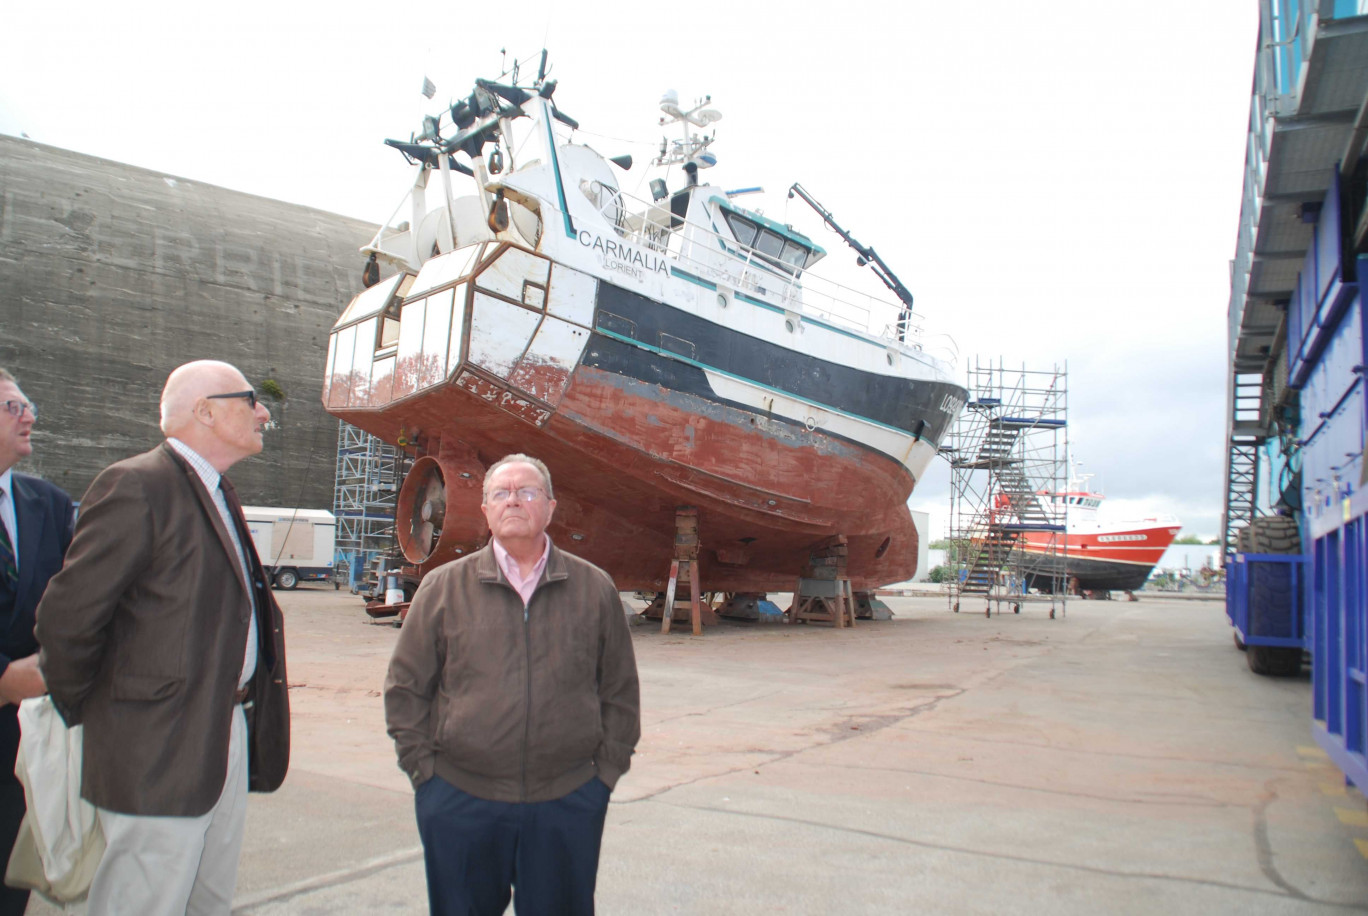 Le président de la Communauté d'agglomération du Boulonnais Jean-Loup Lesaffre et le 1er vice-président Claude Allan, sur l'aire de réparation navale de Lorient.